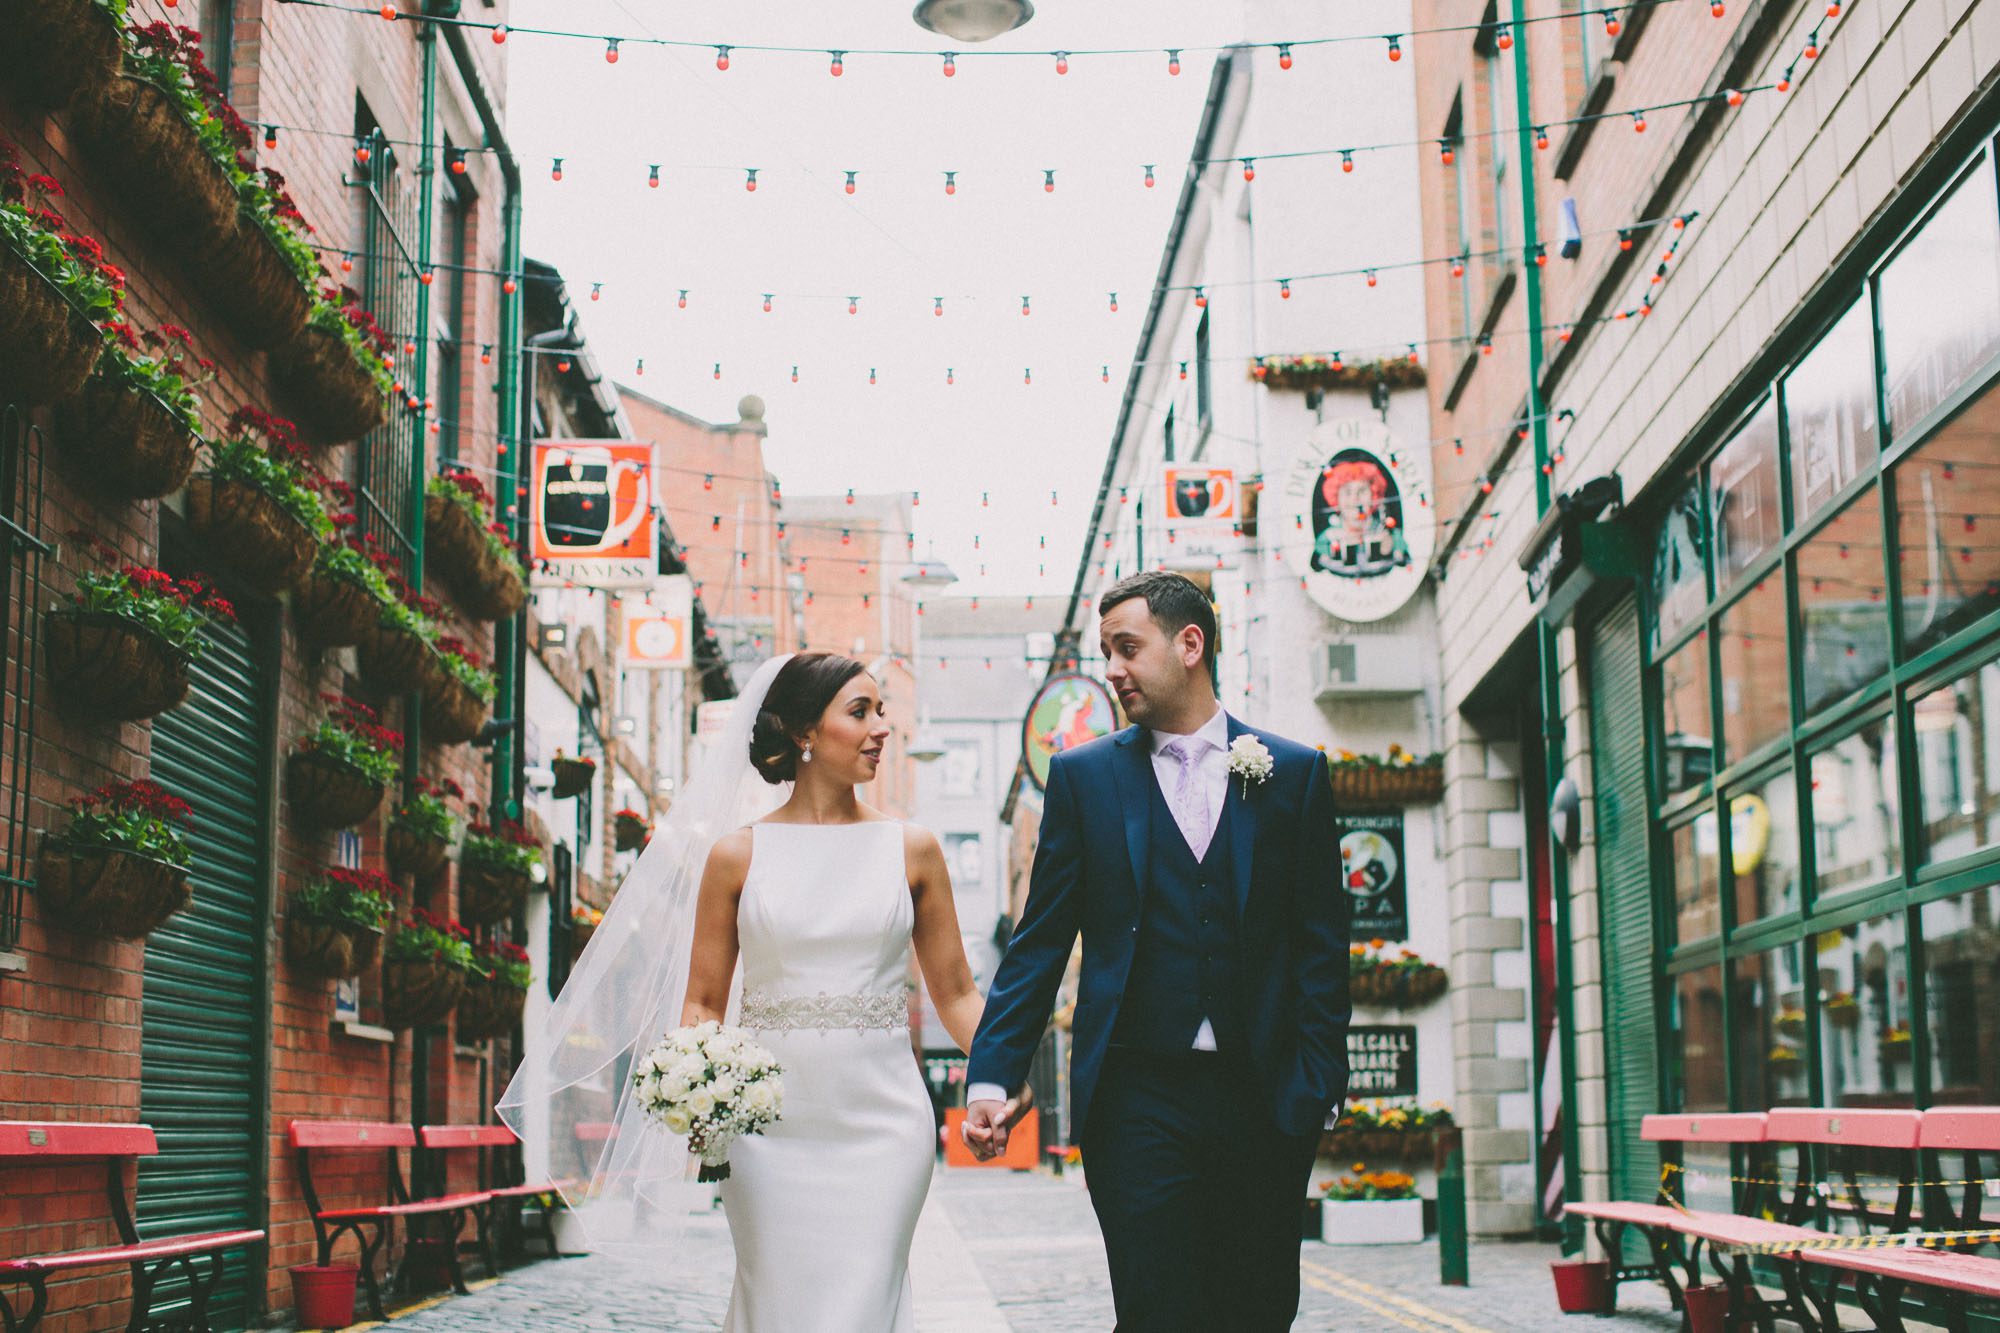 Belfast wedding photography